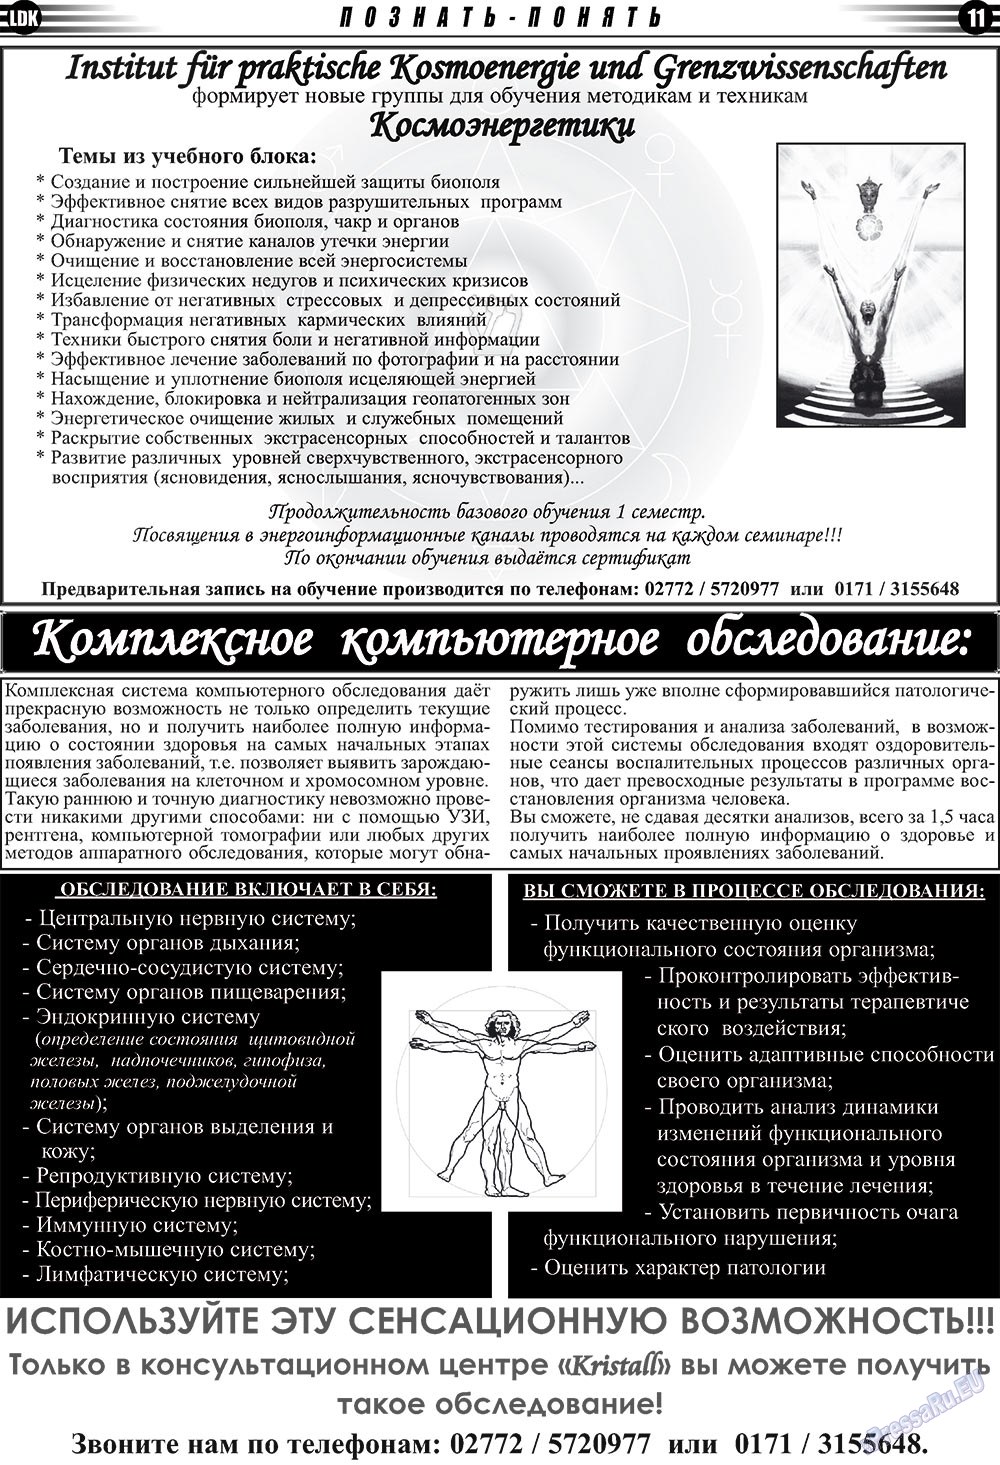 LDK по-русски (газета). 2009 год, номер 2, стр. 11